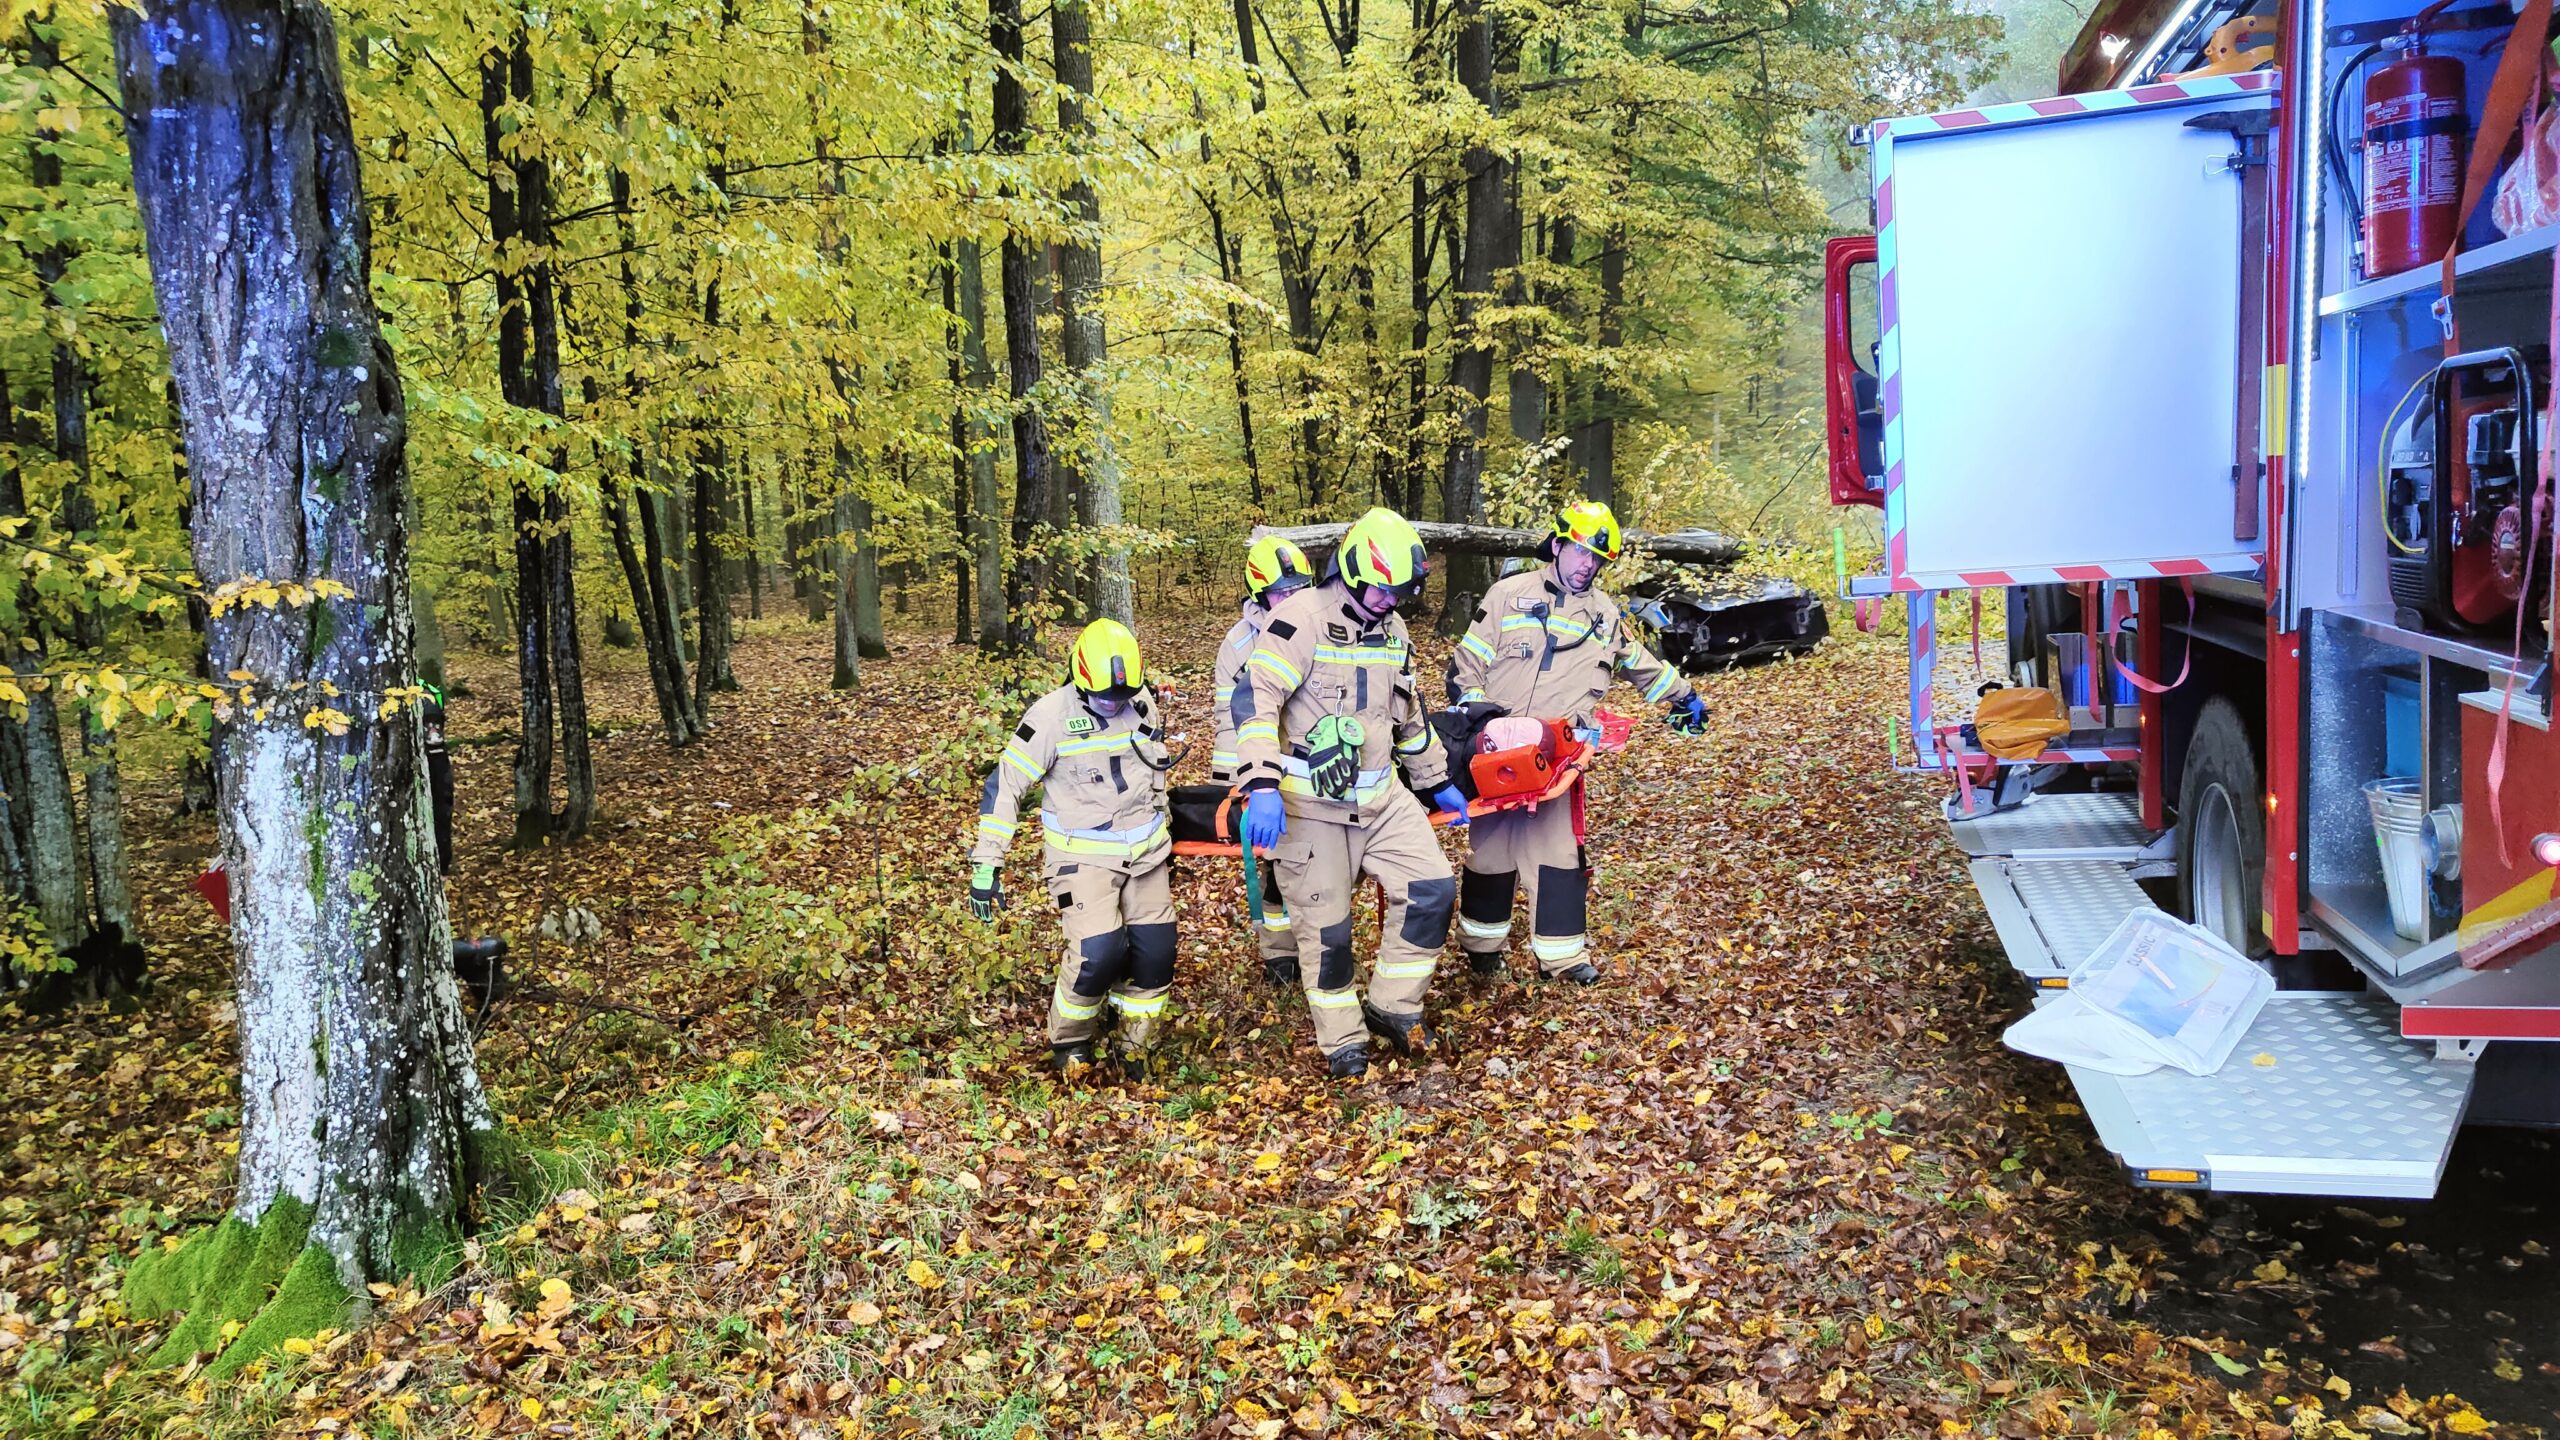 Strażacy niosą manekina ćwiczebnego na noszach typu deska. Z Prawej strony stoi samochód strażacki z pootwieranymi skrytkami sprzętowymi.